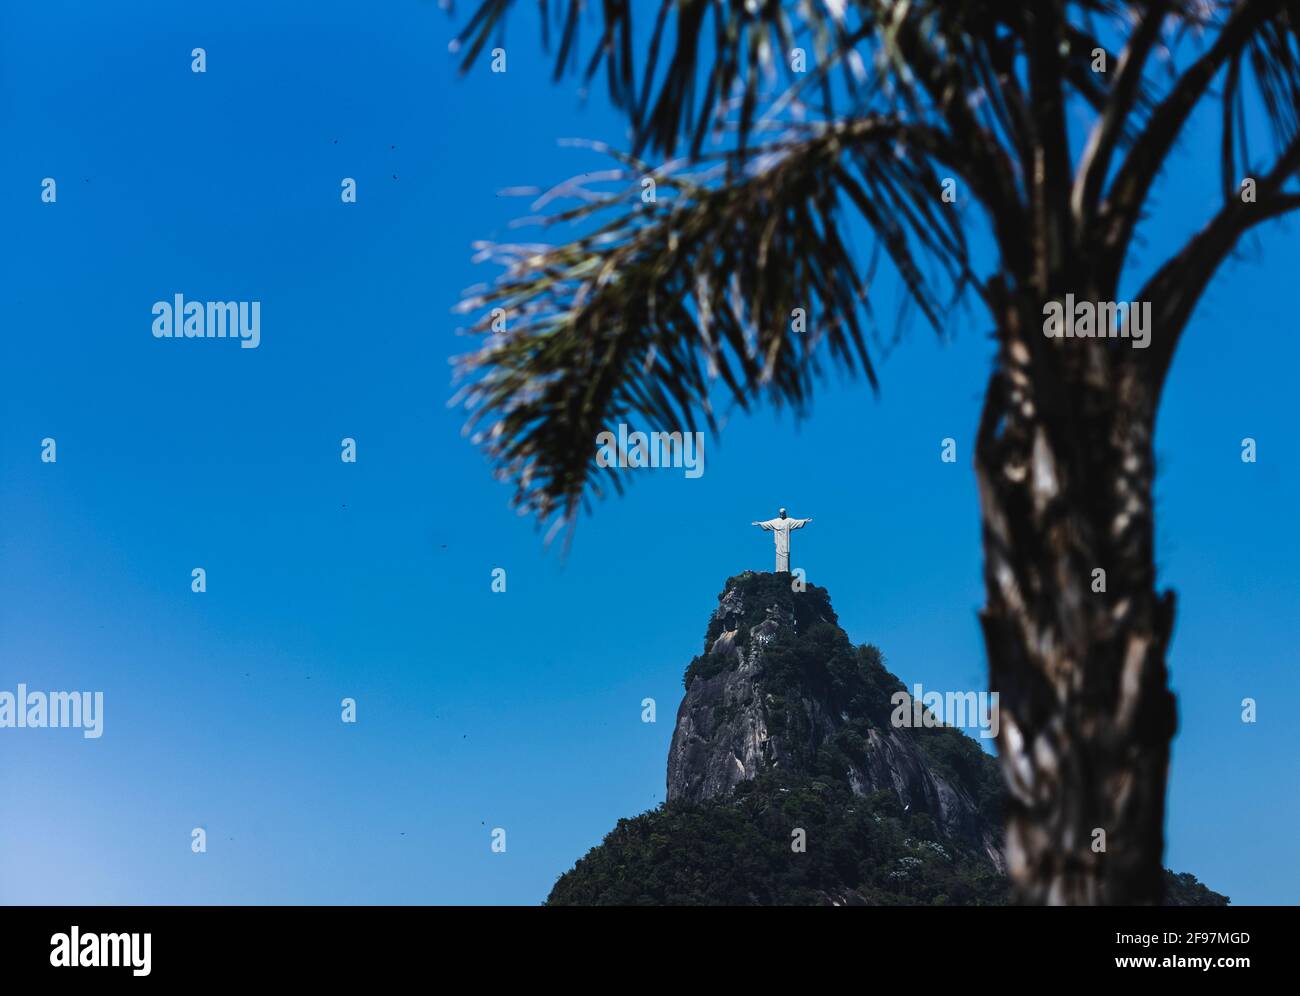 Nascosto dietro una palma: Cristo Redentore statua (Cristo Redentor) in piedi sul monte corcovado a Rio de Janeiro, Brasile come un simbolo mondiale per la pace - Tiro con Leica m10 Foto Stock